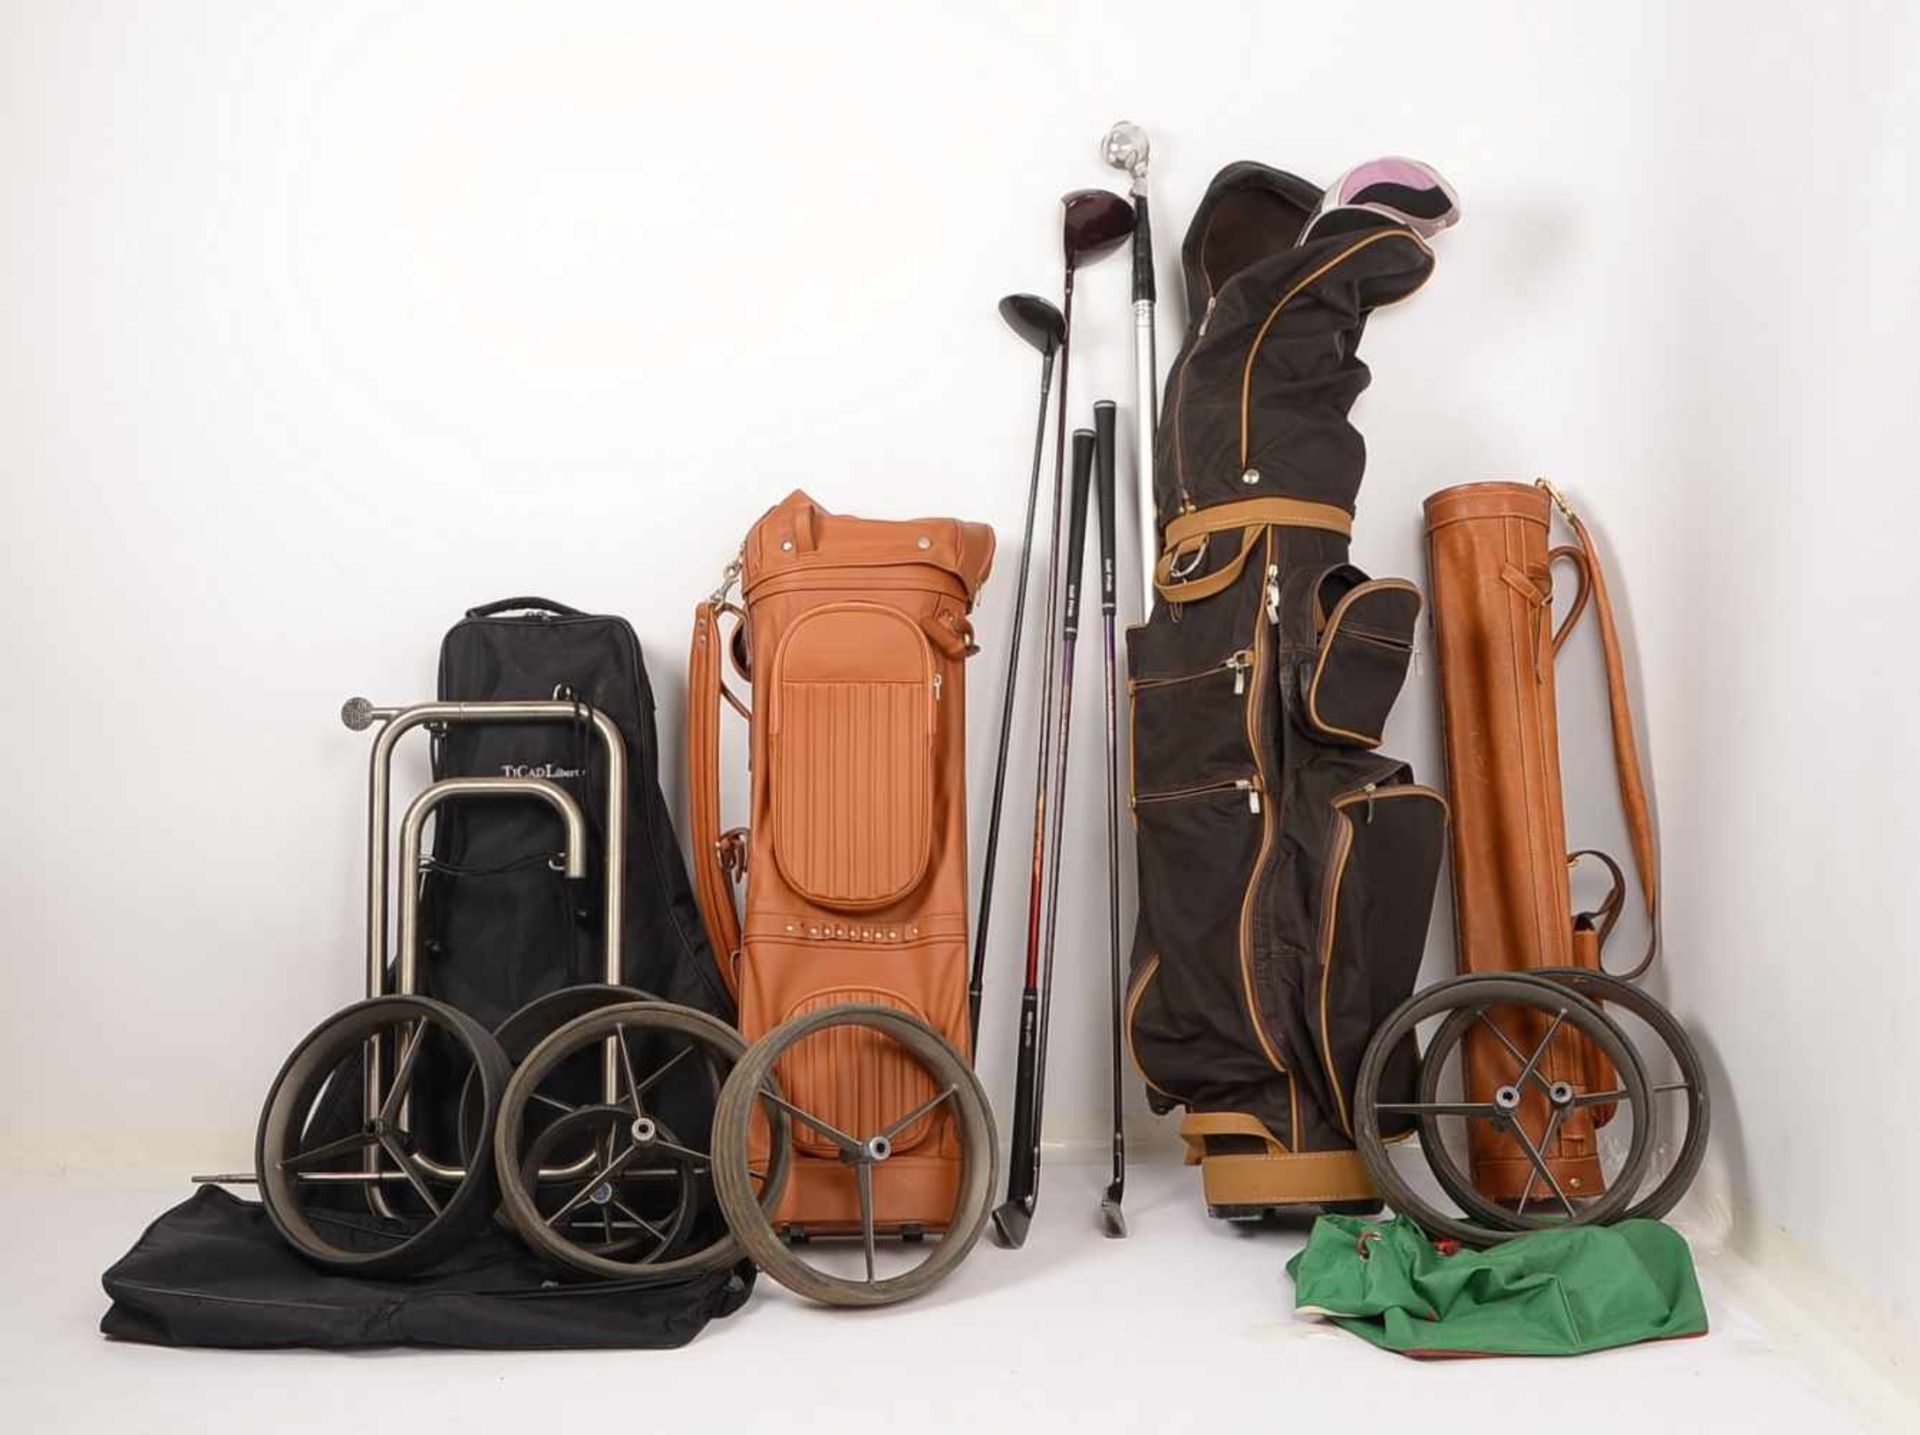 Umfangreiche Golf-Ausrüstung: diverse Schläger/u.a. 'Majesty', 2x Lederbags und 2x Trolleys, dazu